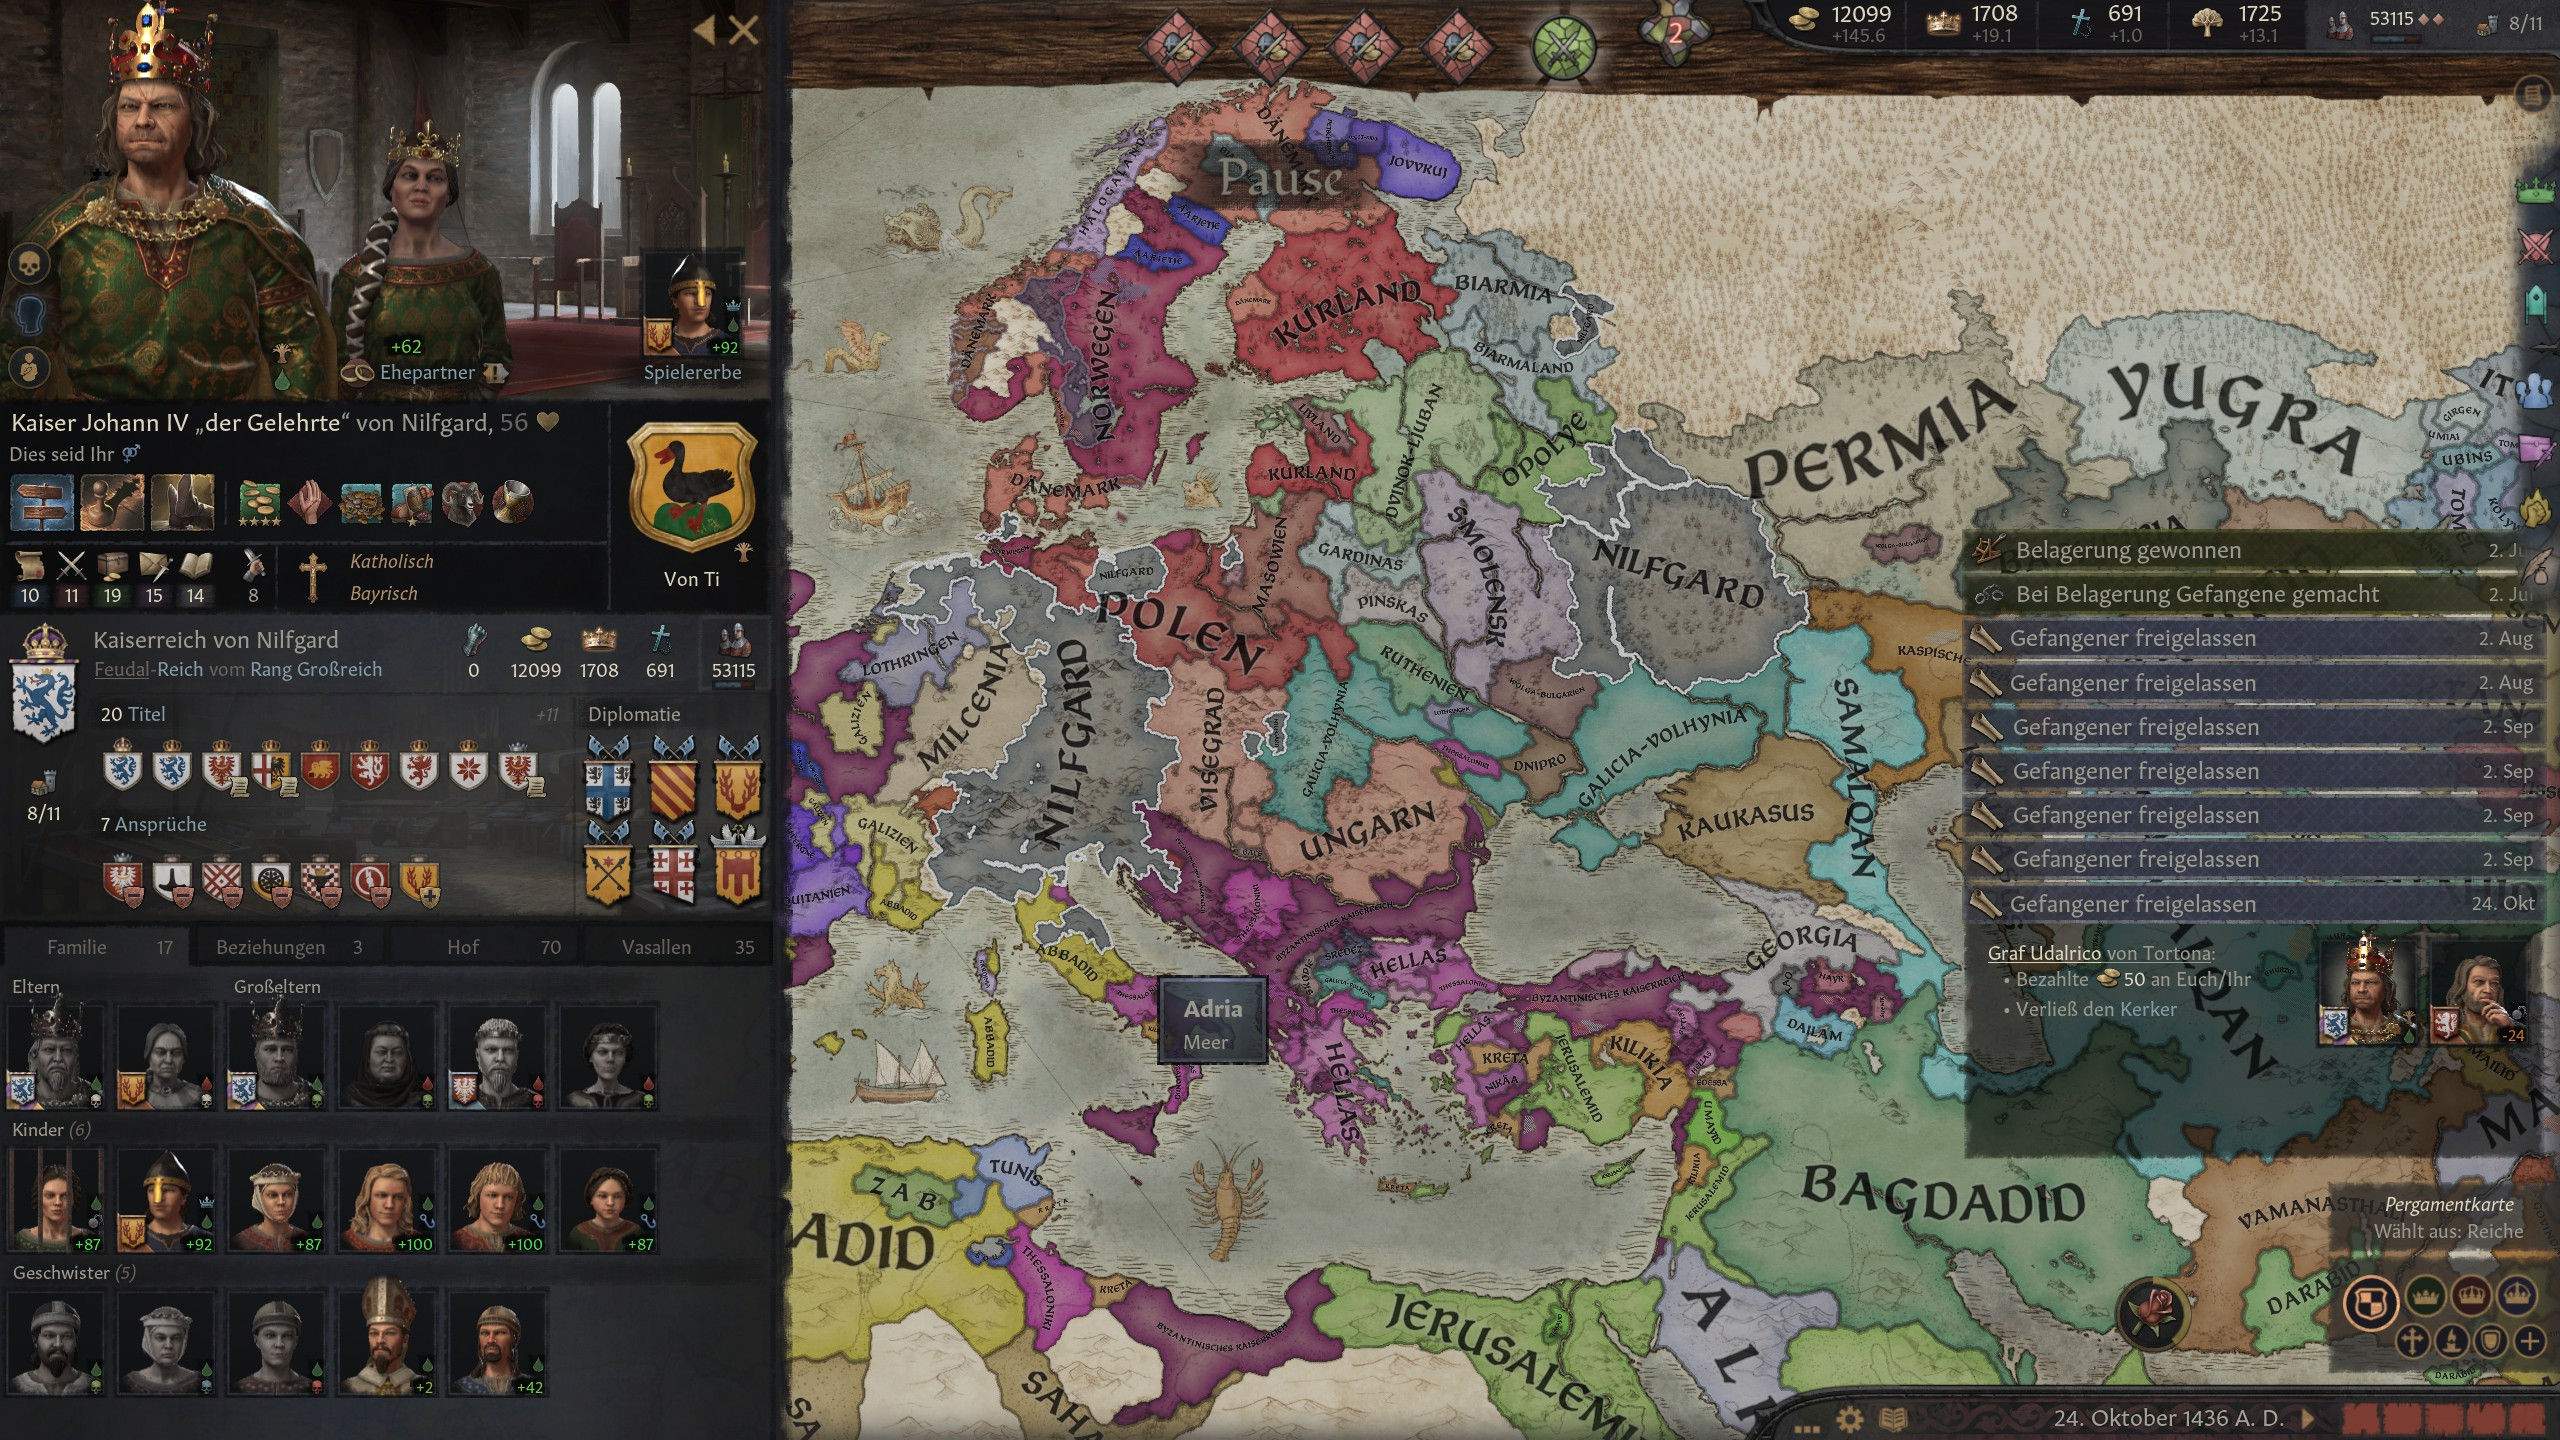 Screenshot Crusader Kings 3. Zu sehen ist ein Ausschnitt der Weltkarte des Globalstrategiespiels und die Übersicht der aktuellen Spielfigur. Die Titel, Ehepartner, Bündnisse und viele weitere Infos zeigen, wie komplex das Mittelalter-Spiel ist. 